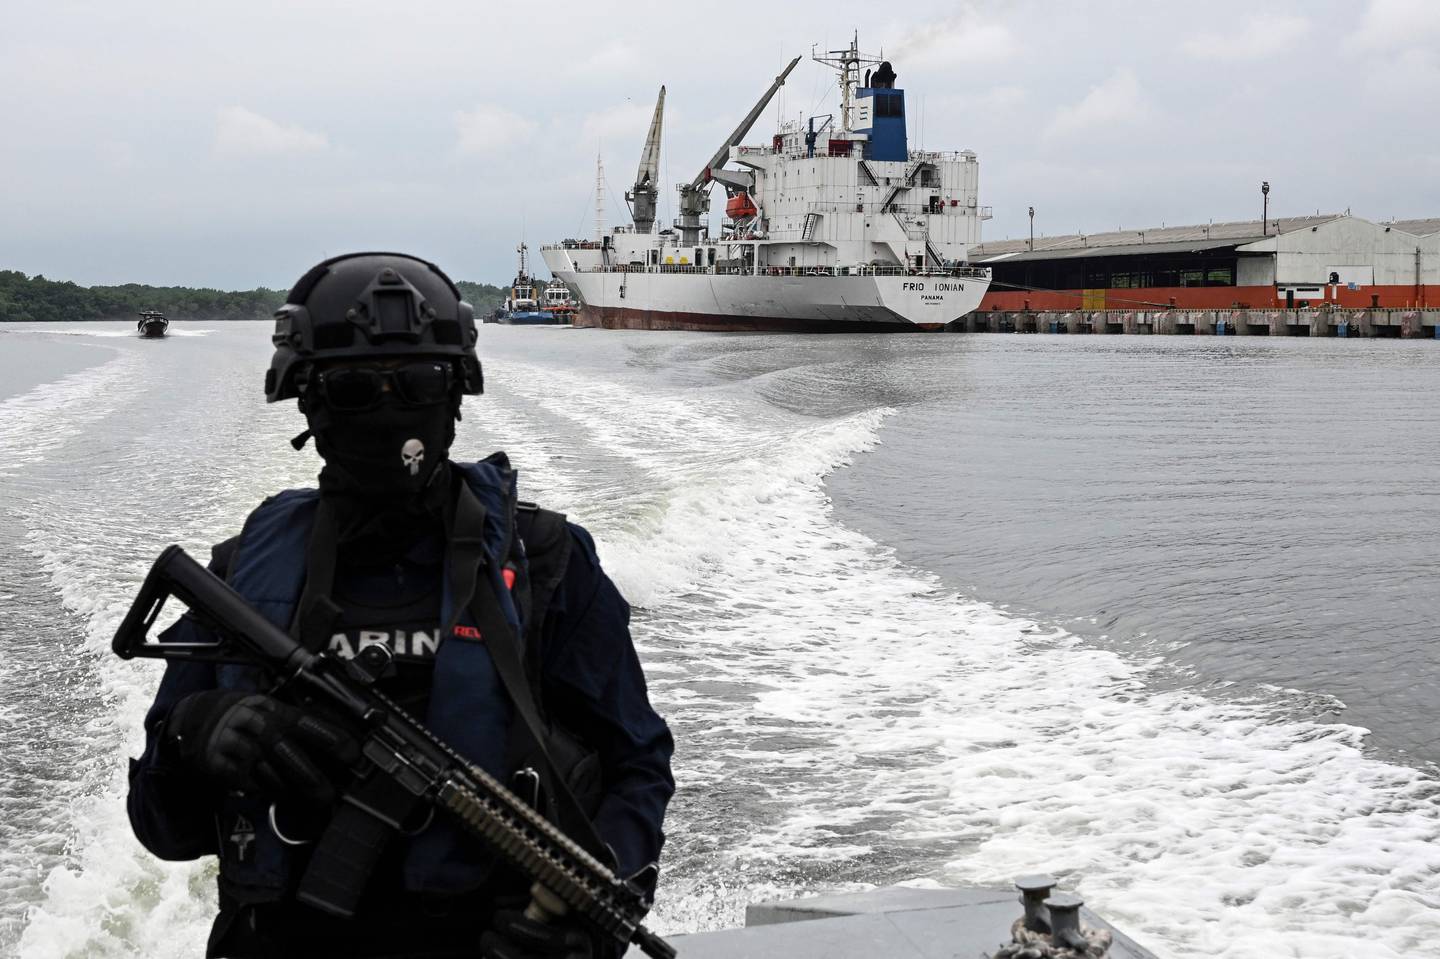 Un miembro del Comando de Guardacostas (Coguar) de la Armada del Ecuador navega en una patrulla a lo largo de canales afluentes del río Guayas junto a terminales portuarias mientras participa en una patrulla antinarcóticos en Guayaquil.